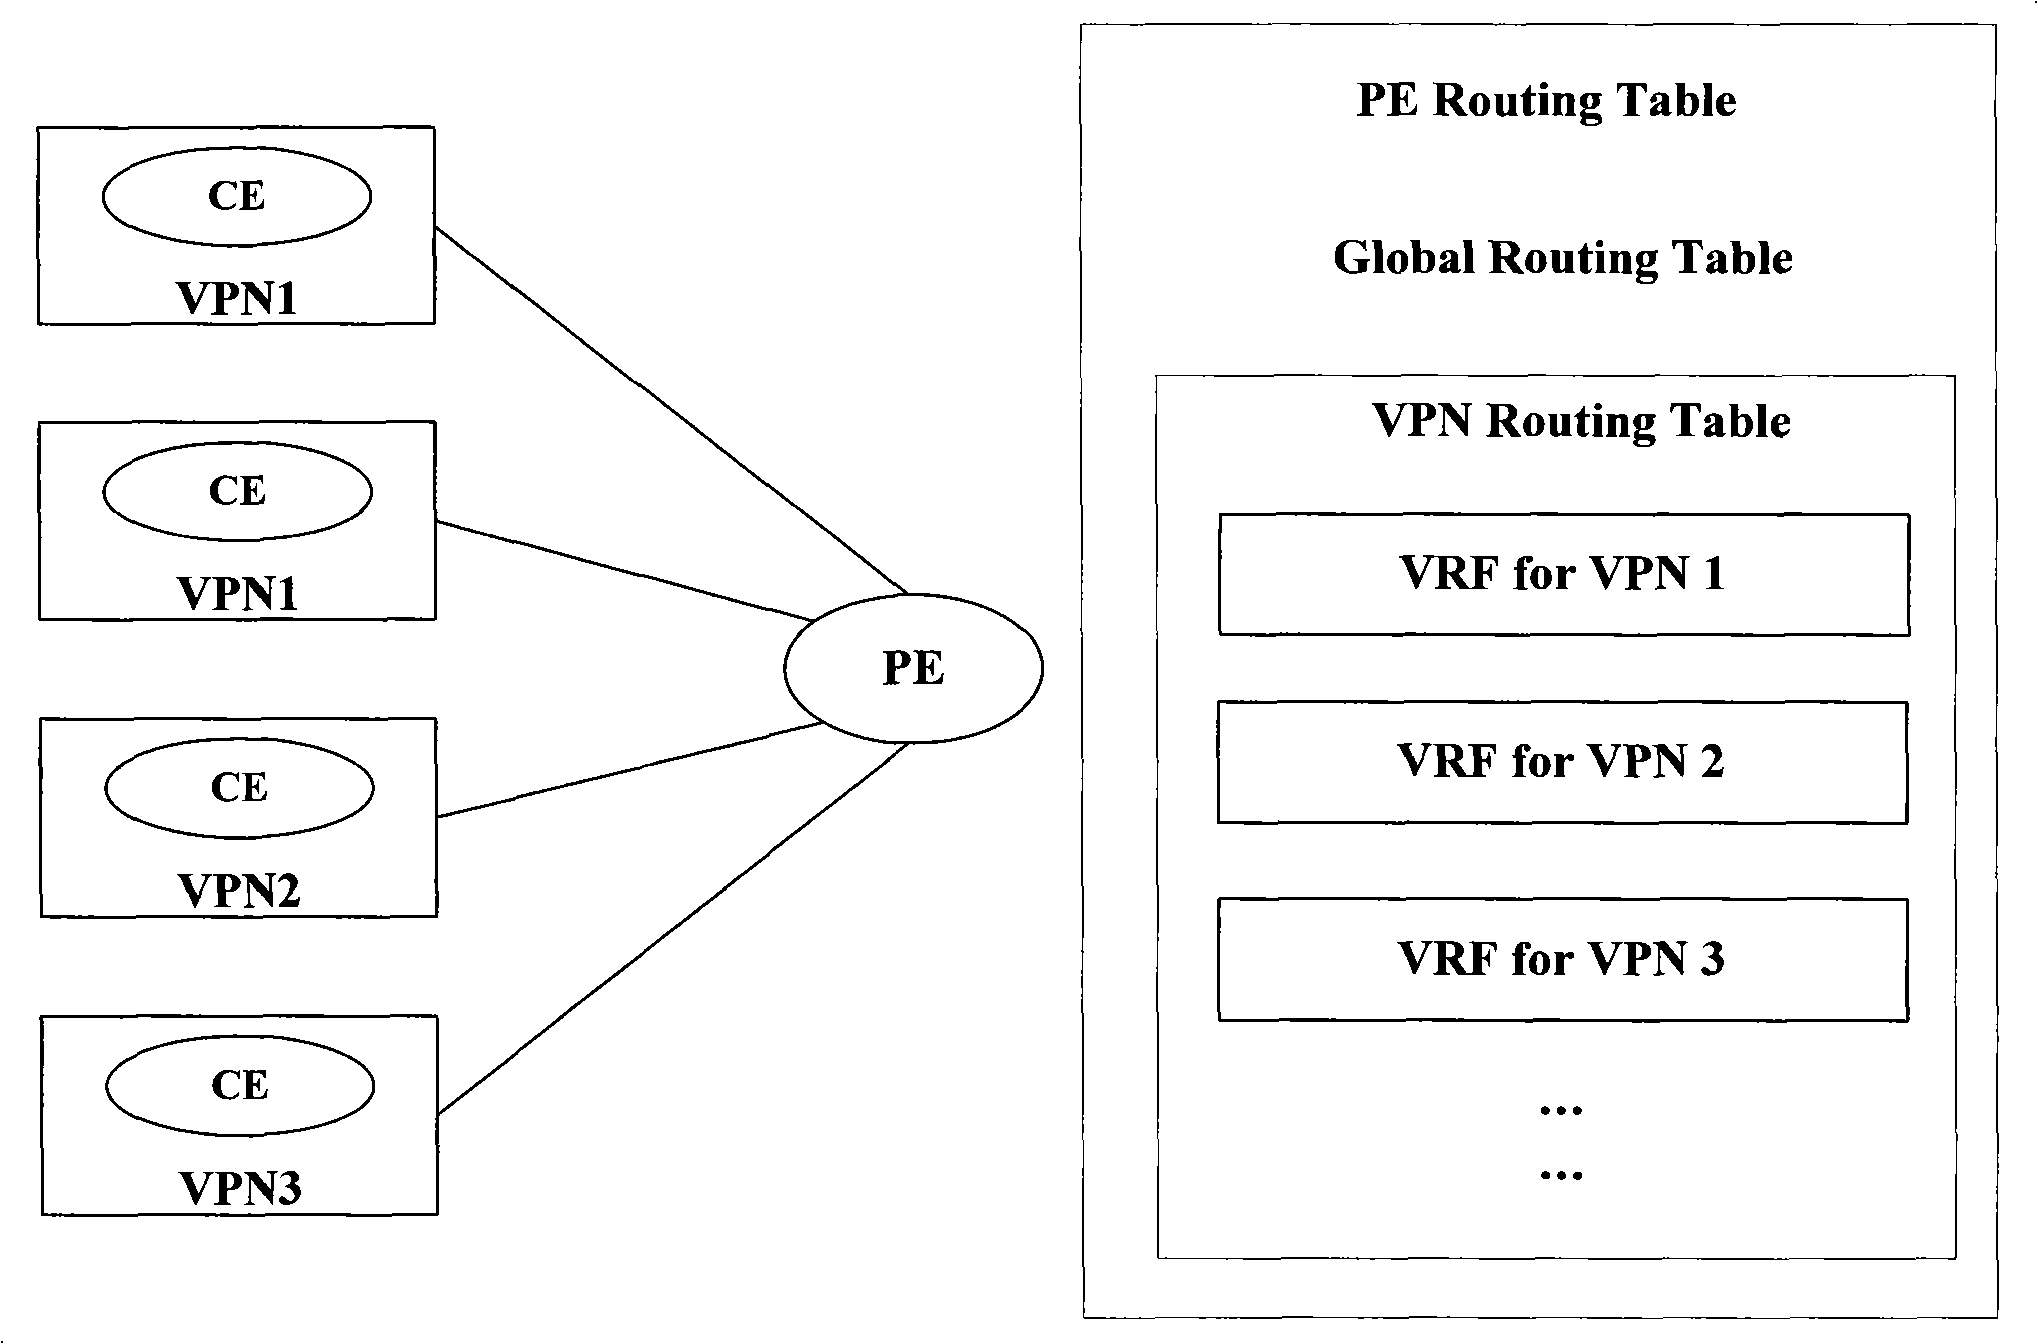 VRF route restriction management method of MPLS VPN network